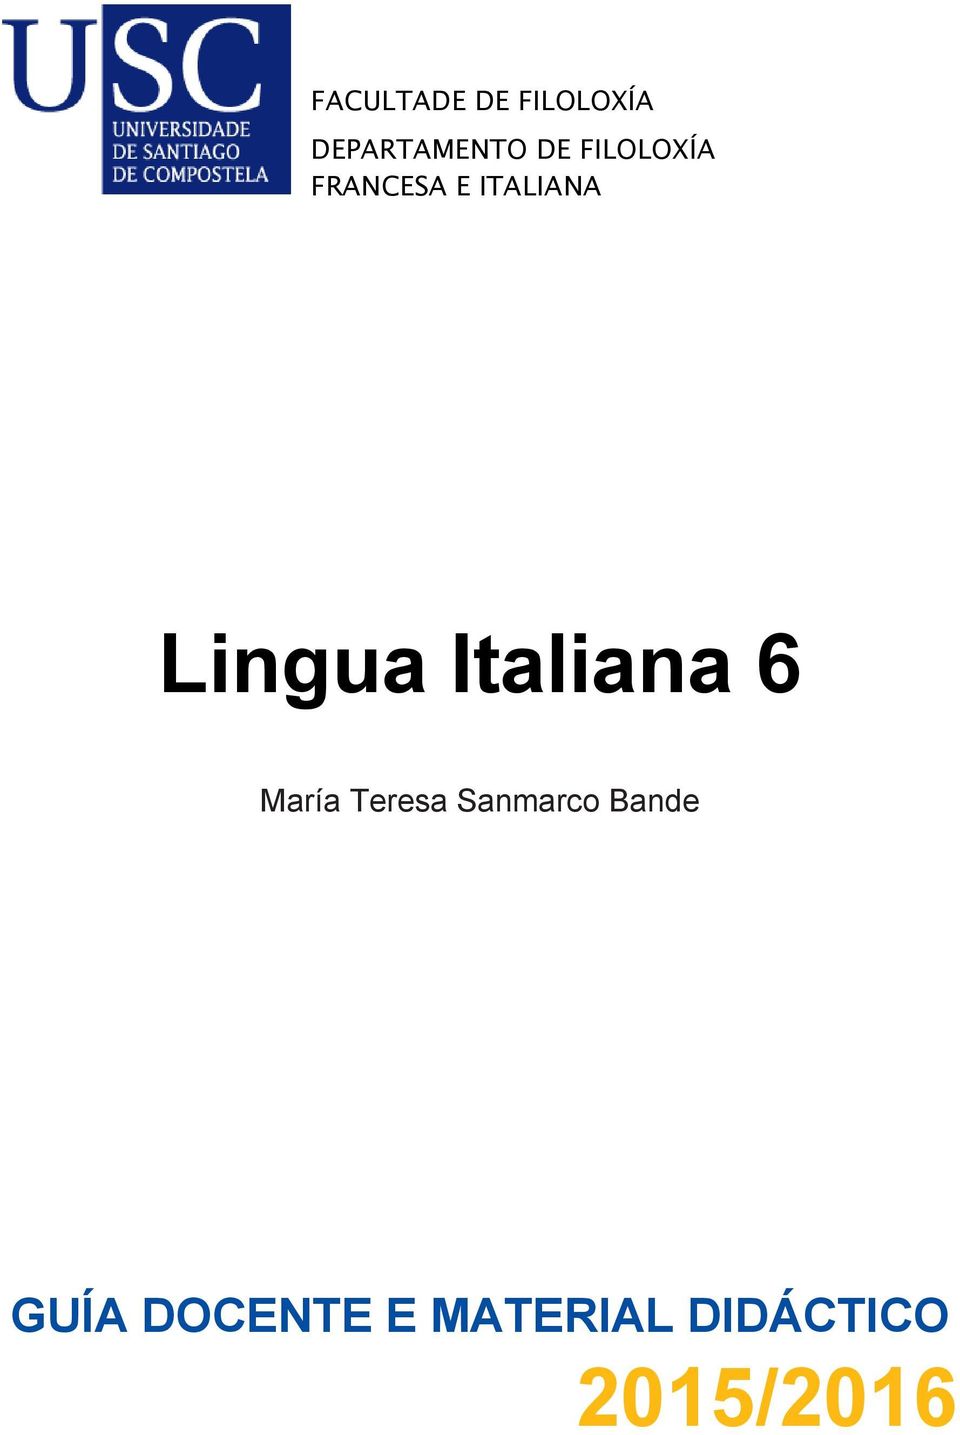 Italiana 6 María Teresa Sanmarco Bande